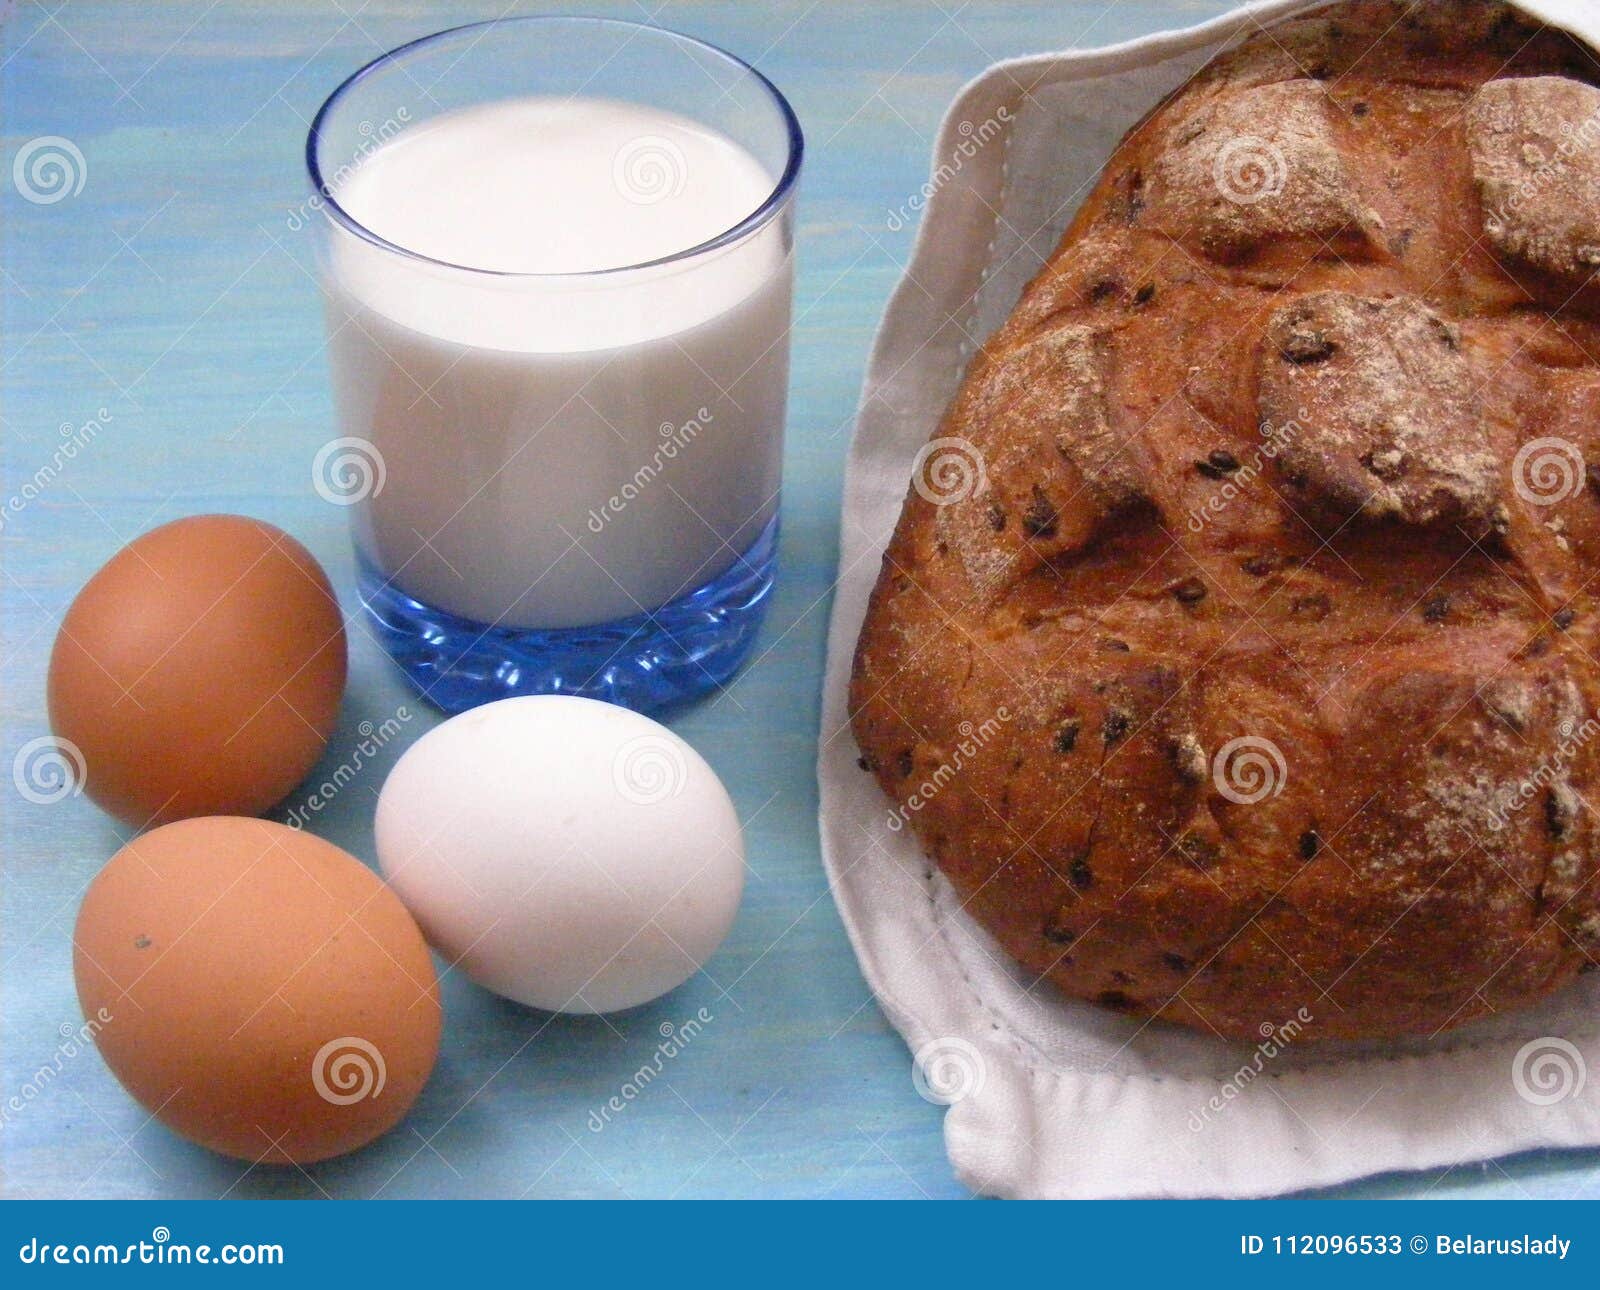 牛奶与牛角面包的早餐图片 - 免费可商用图片 - CC0素材网